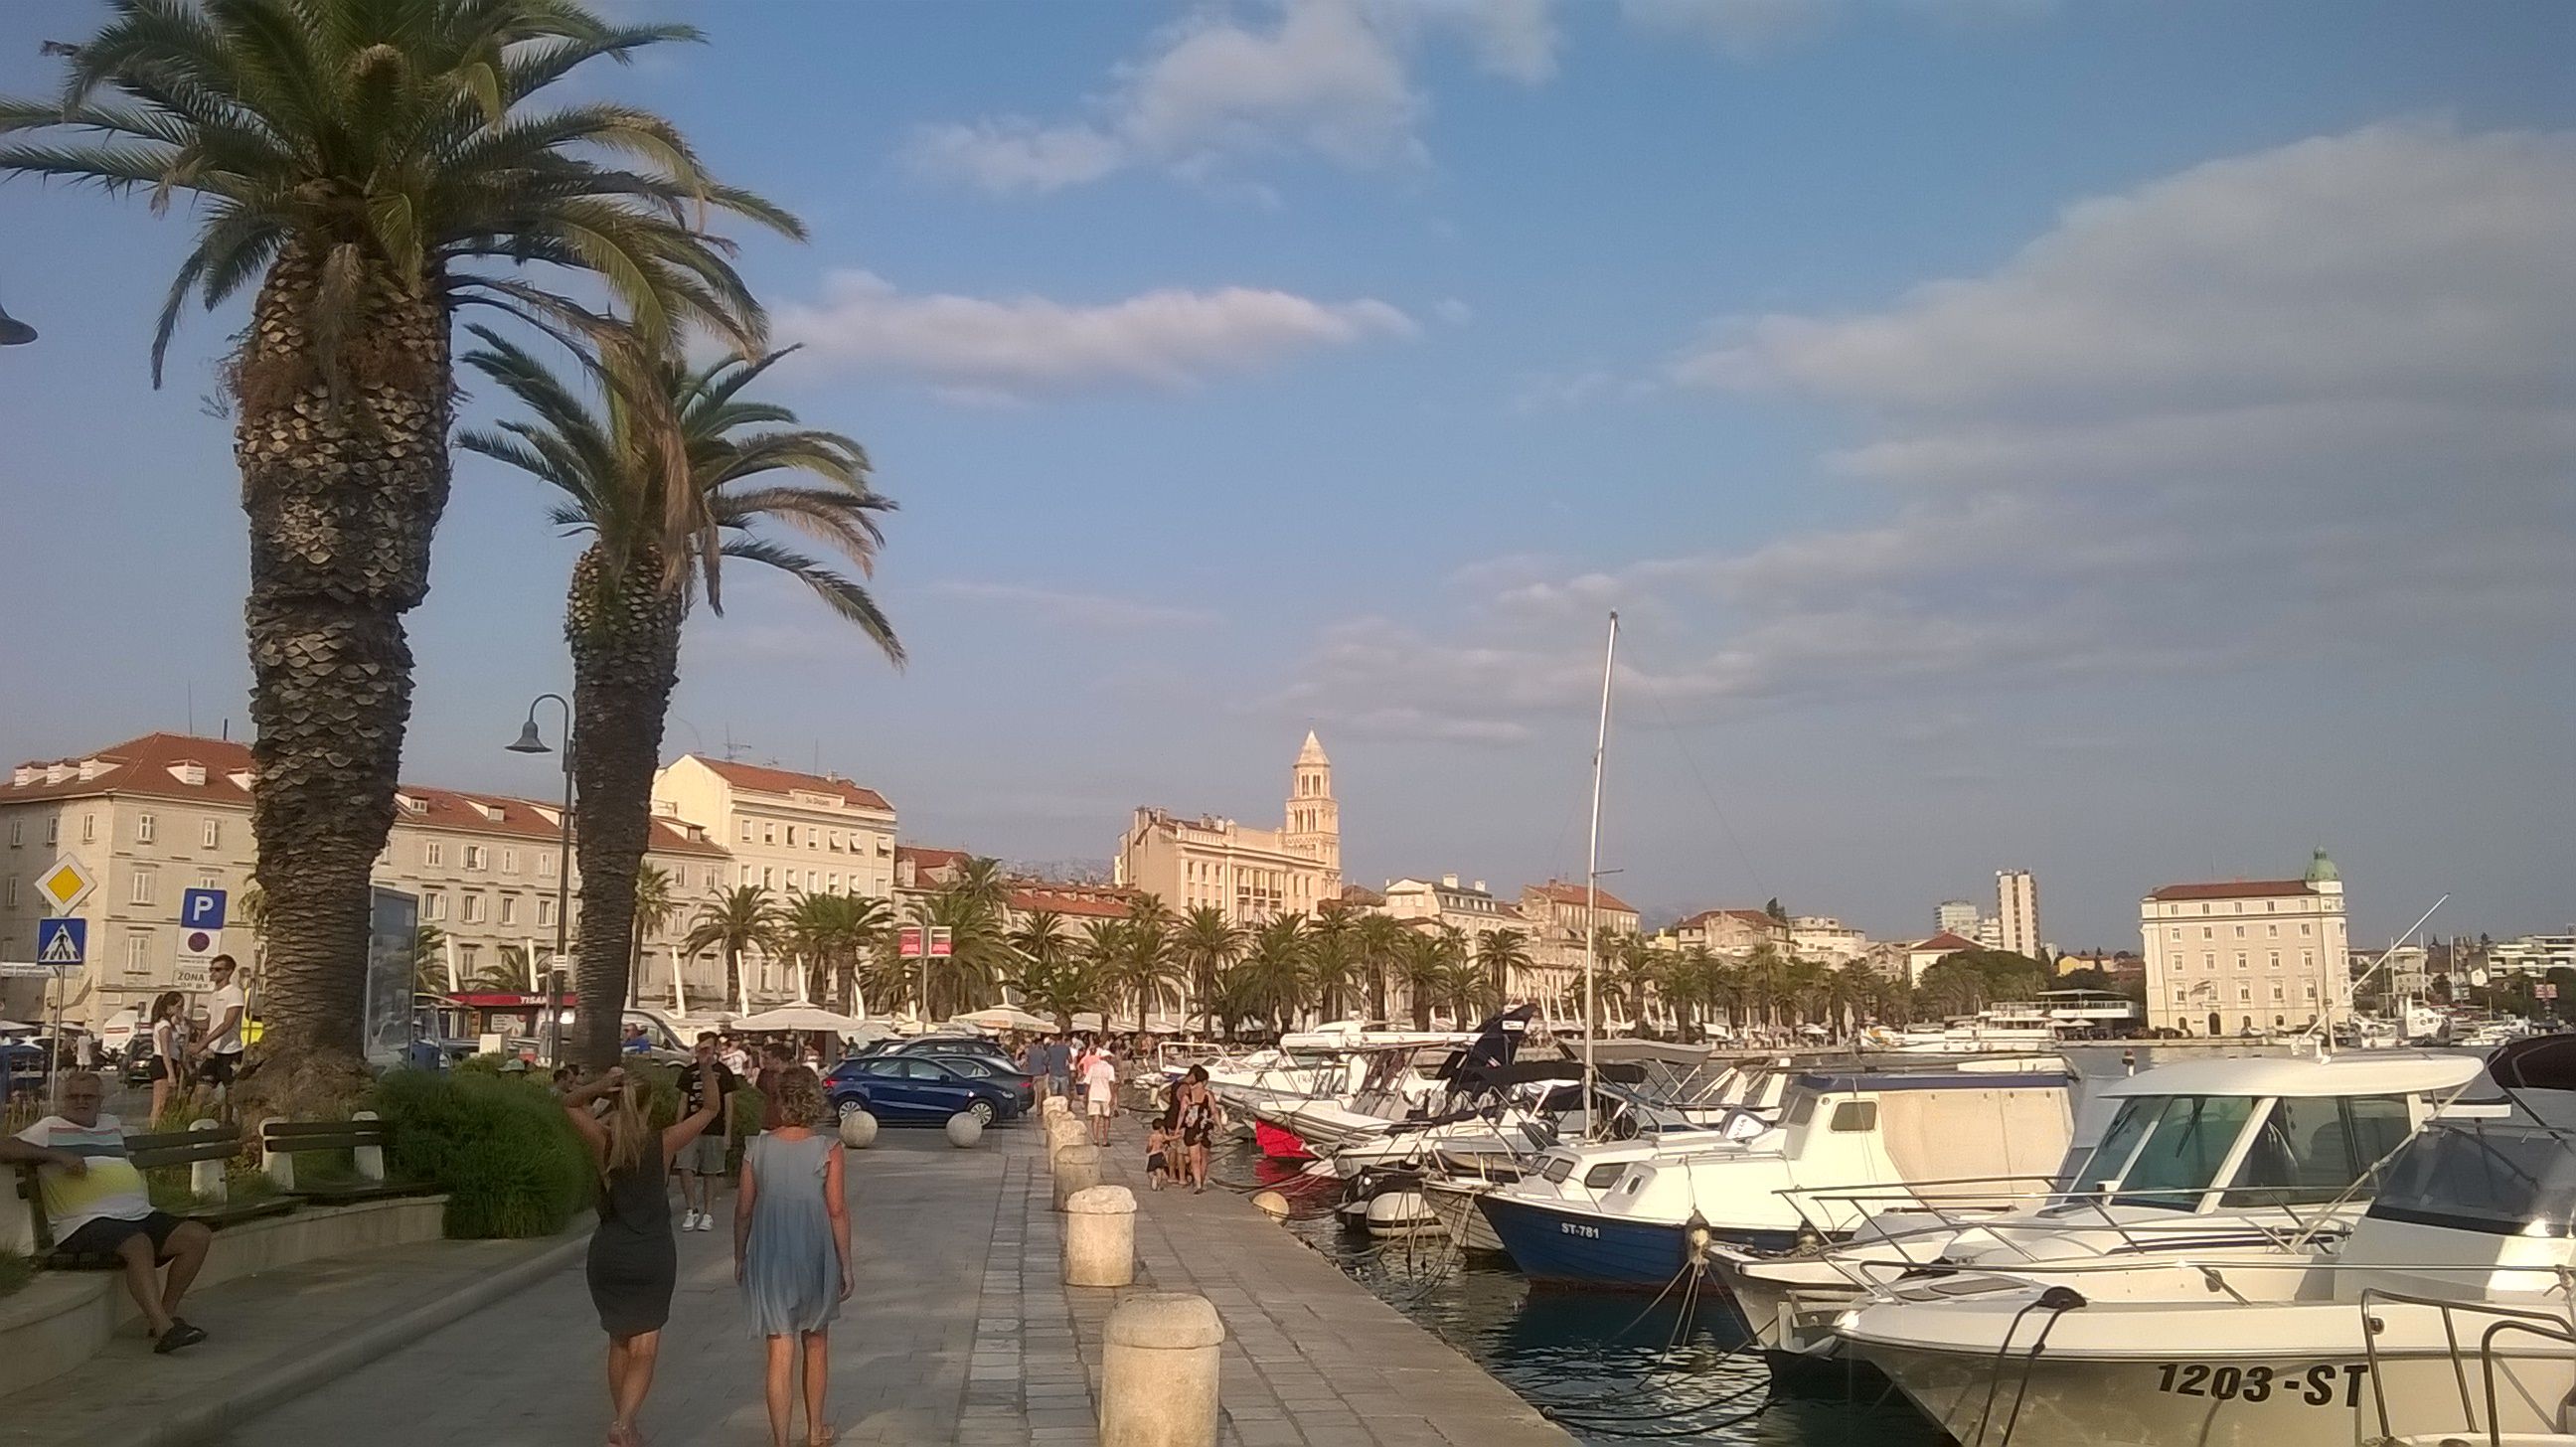 promenade and Old town of Split, Croatia